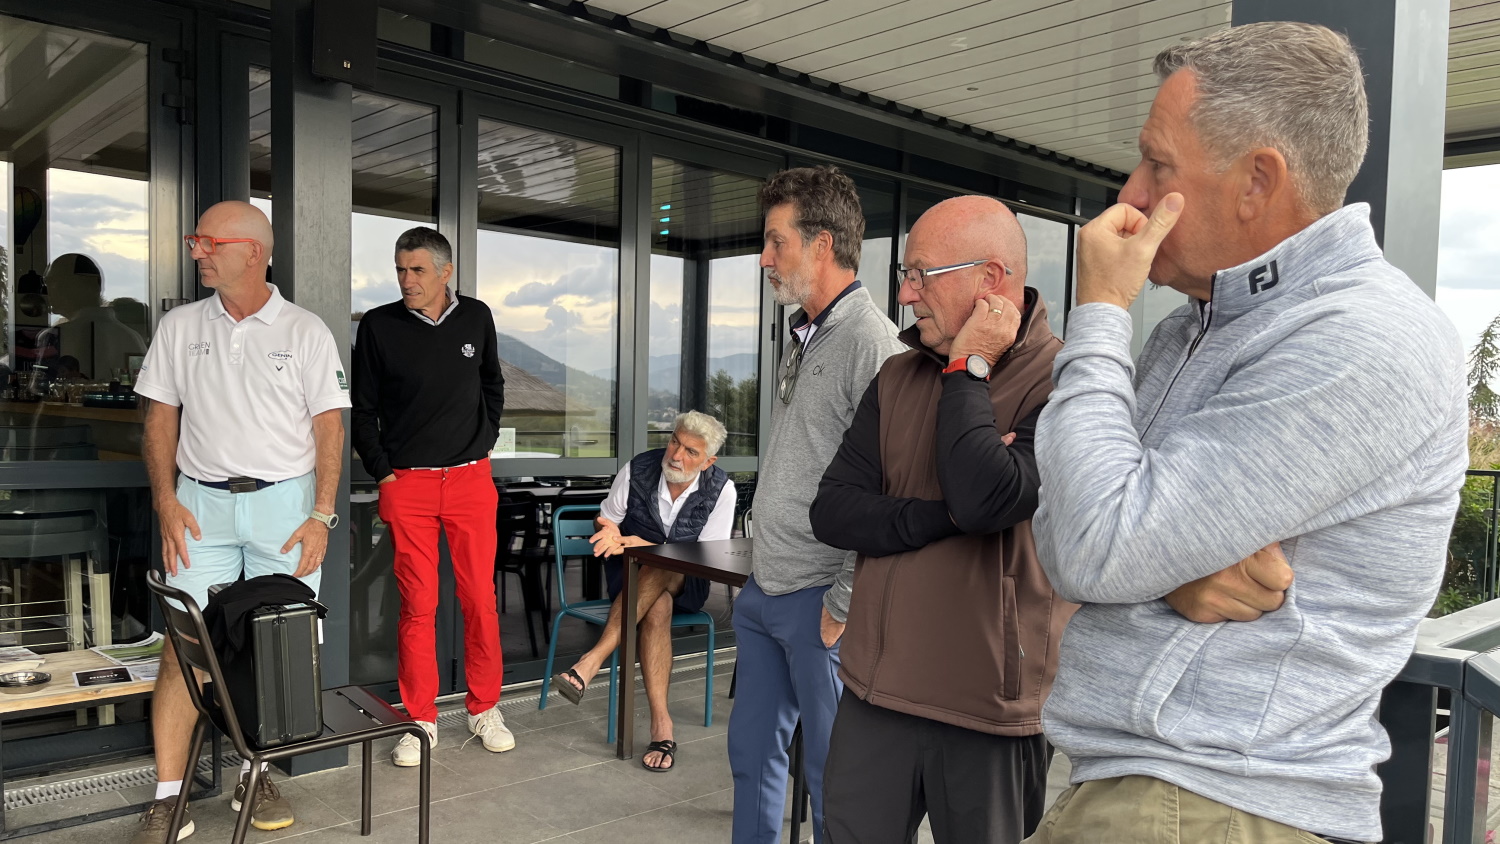 2022 compétition seniors golf domaine saint clair annonay ardeche